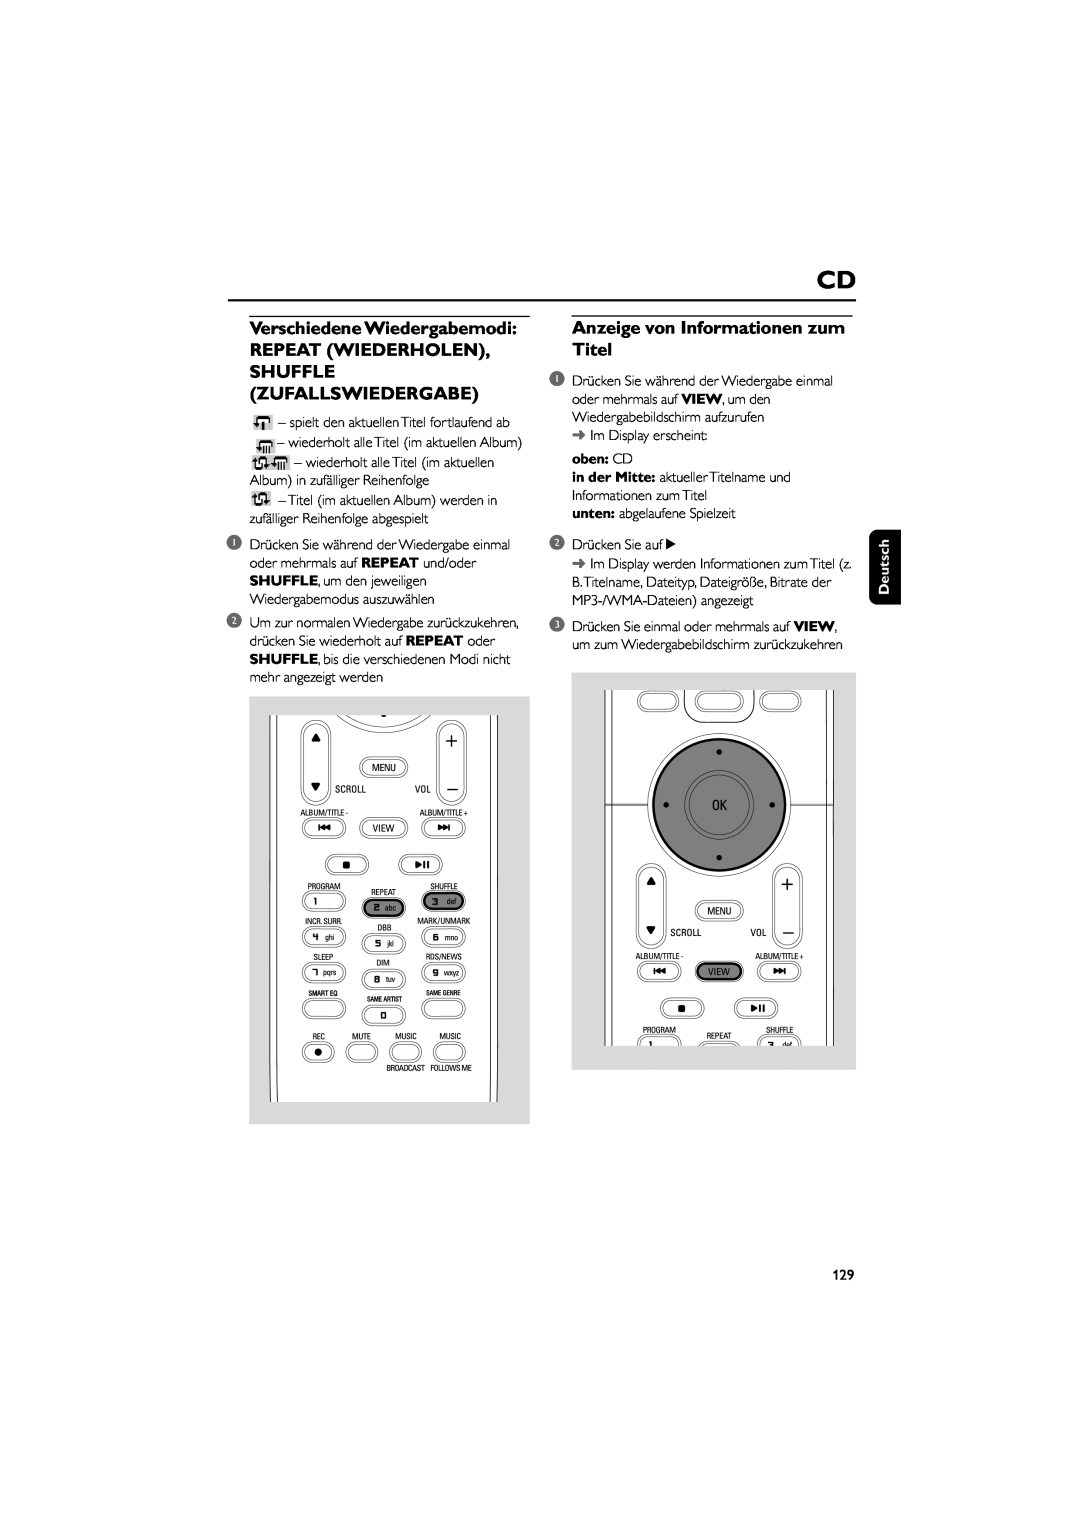 Philips WAC5 user manual Verschiedene Wiedergabemodi REPEAT WIEDERHOLEN, Shuffle Zufallswiedergabe, oben CD, Deutsch 